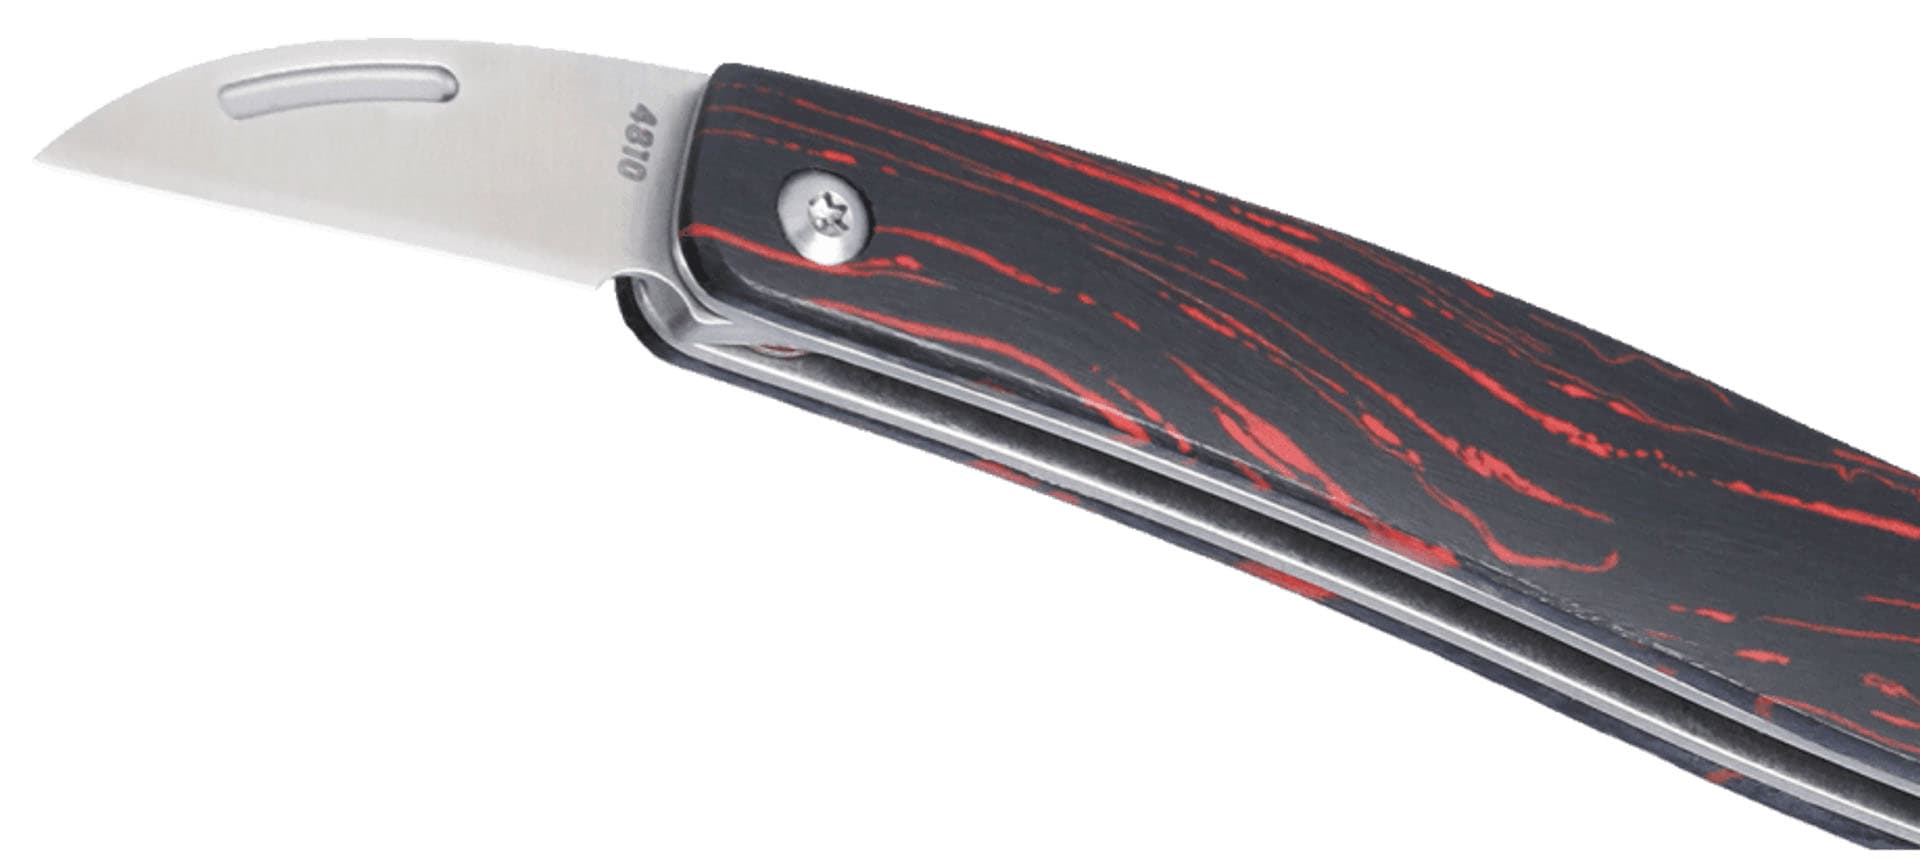 CRKT® Forebear Slip Joint Folding Knife